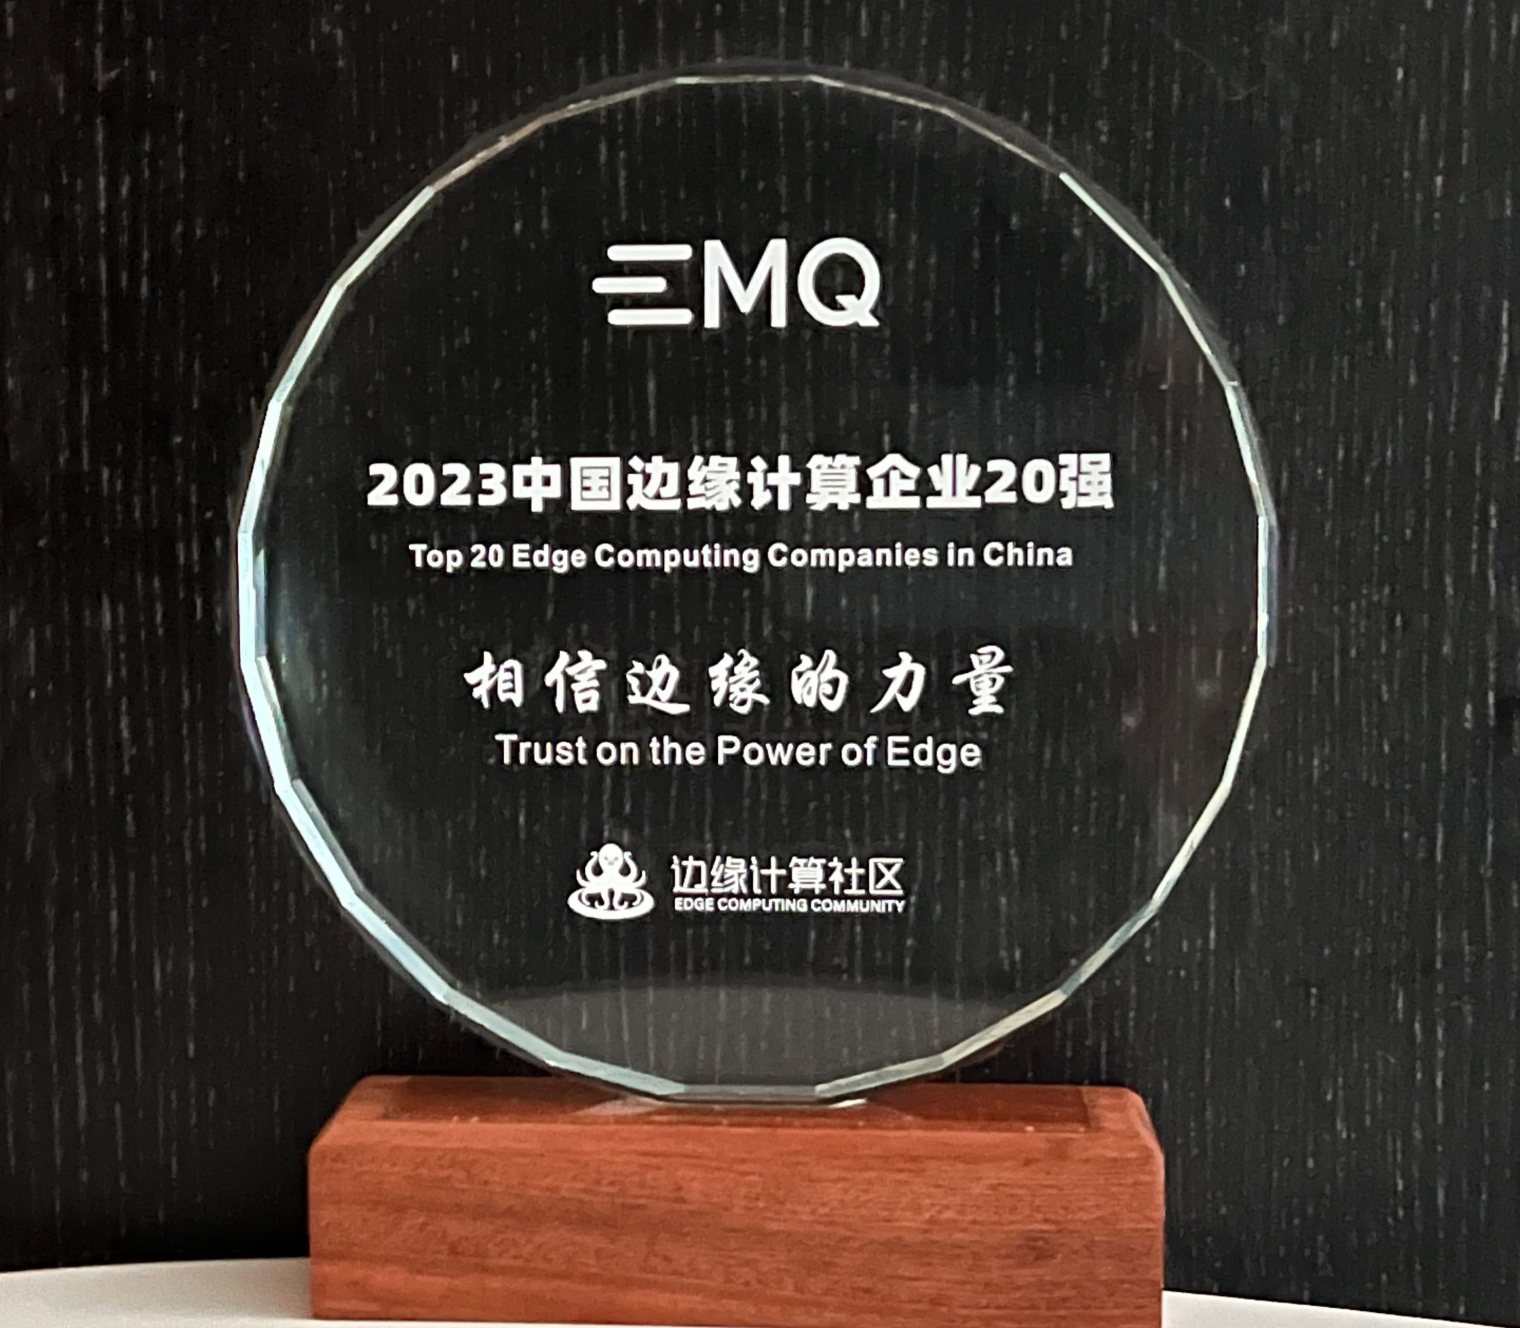 EMQ 映云科技蝉联“2023 中国边缘计算企业 20 强”